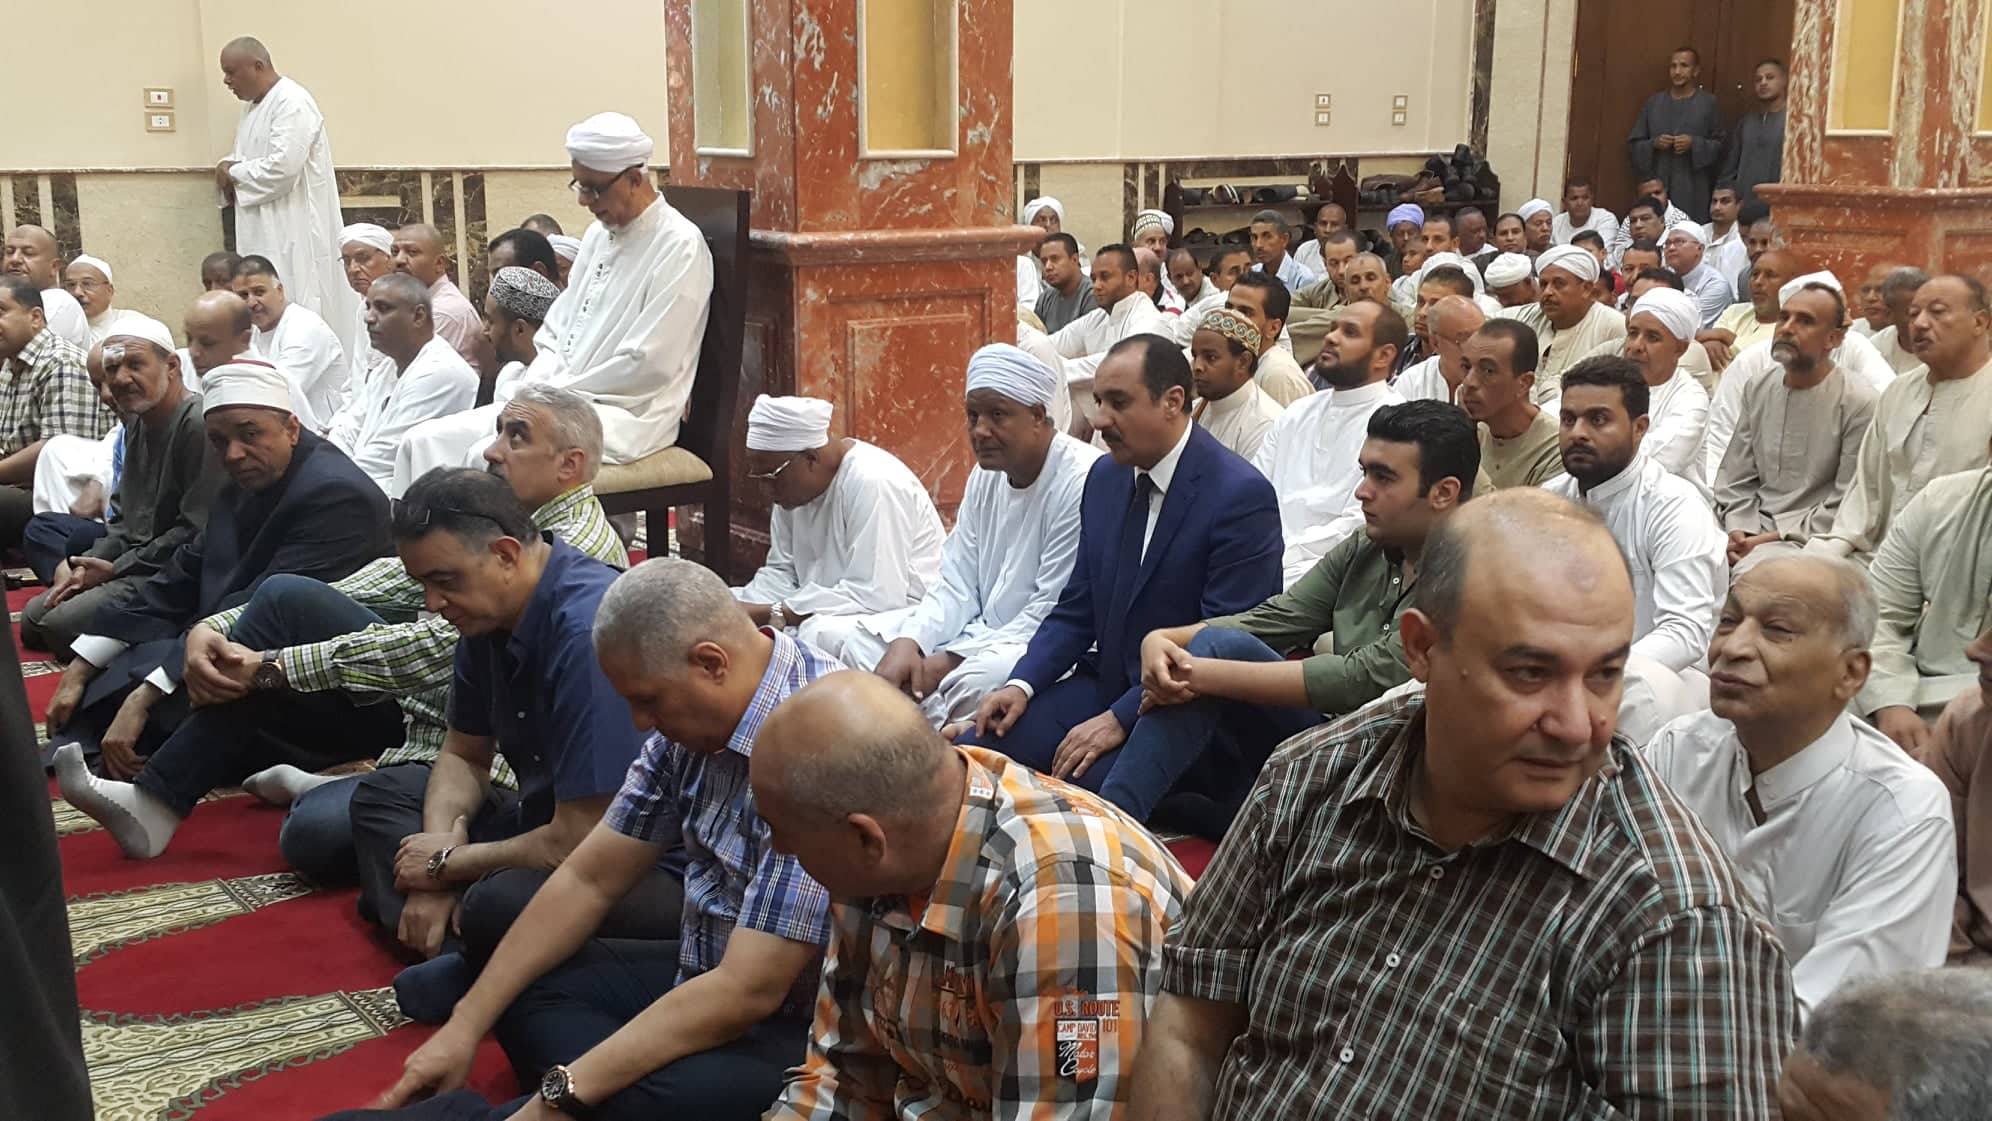 إفتتاح رجال الدين وأمن الأقصر يشهدون إفتتاح مسجد الصحابة بنجع الطويل (4)